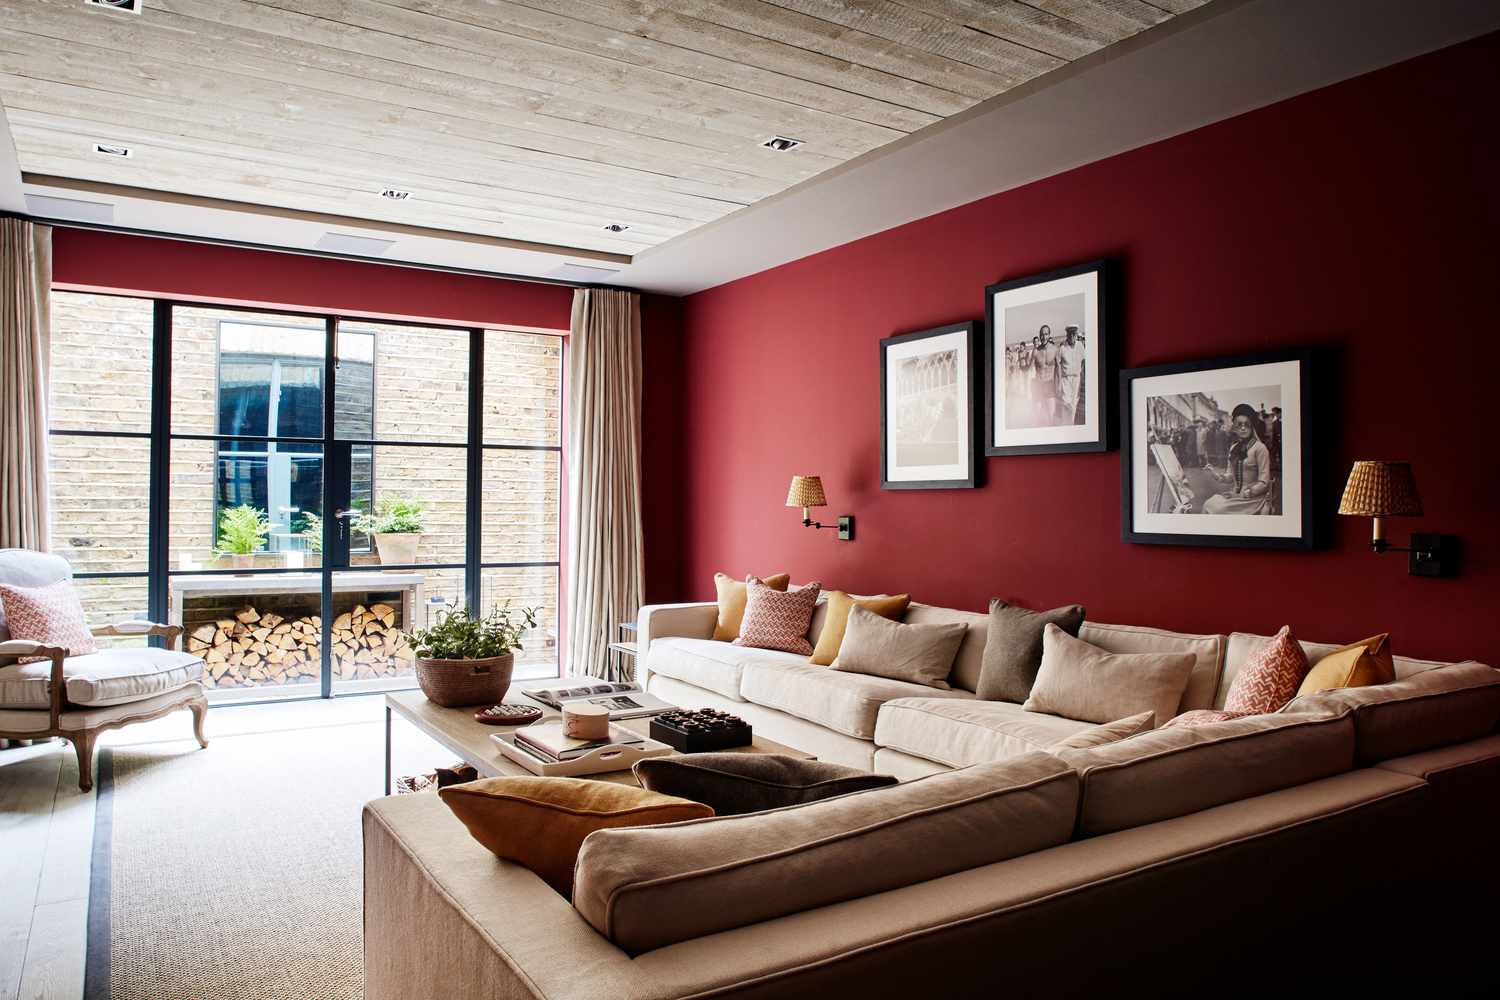 Wohnzimmer mit braunem und rotem Farbschema